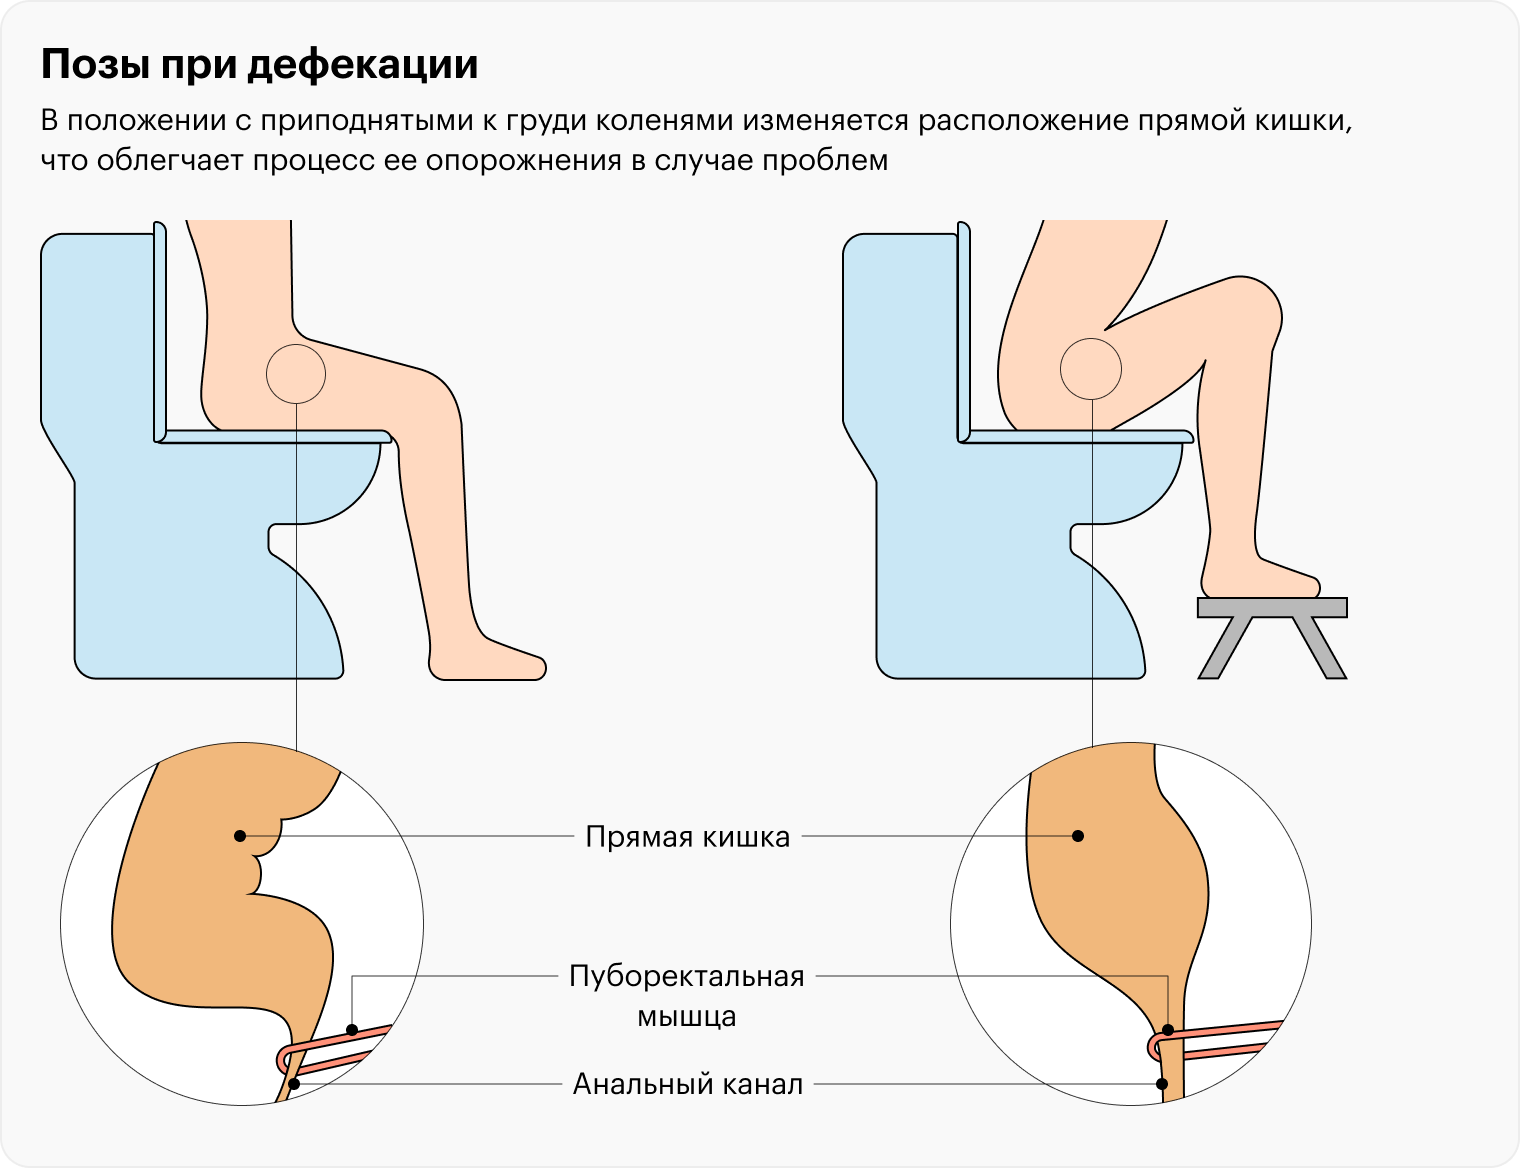 Более привычный способ сидения на унитазе не так сильно сглаживает аноректальный угол — в такой позе какать труднее, чем когда колени приподняты выше таза. Исправить это можно с помощью подножки — на «Яндекс-маркете» она стоит от 578 ₽